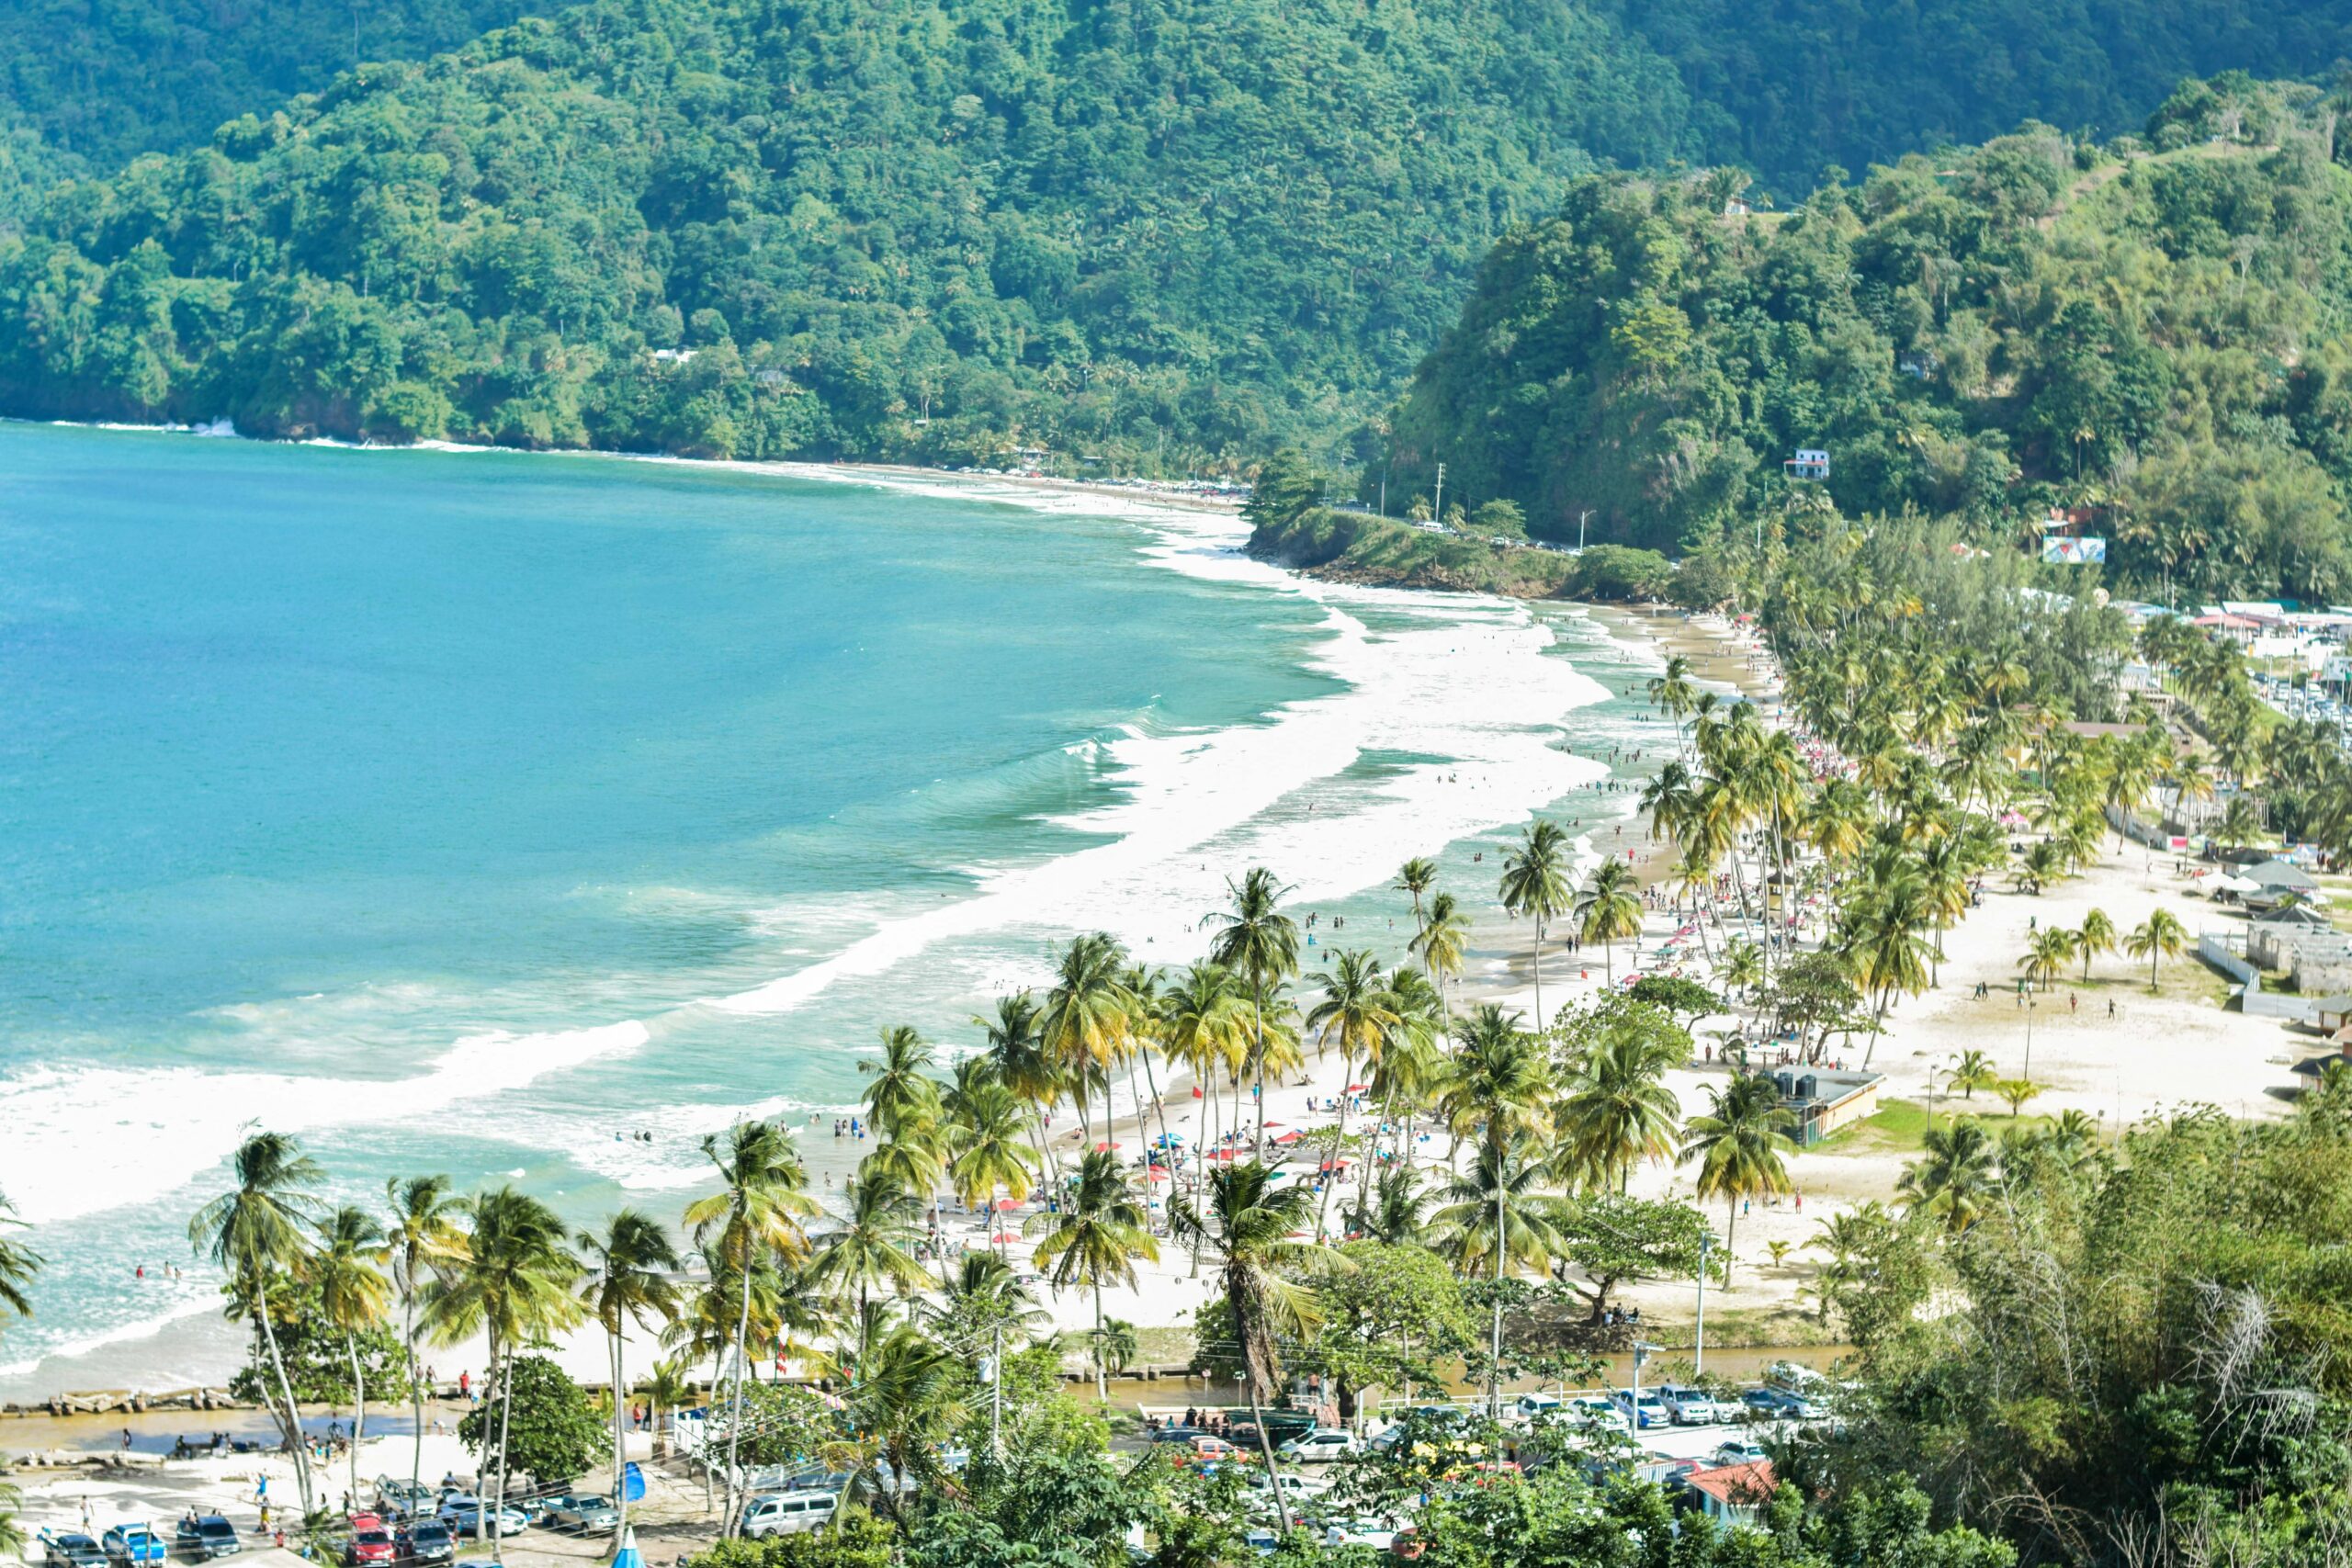 Vista da Praia Maracas, Maracas Bay Village Trindade e Tobagocom mar azul e coqueiro em volta - Representa seguro viagem para Trindade e Tobago.